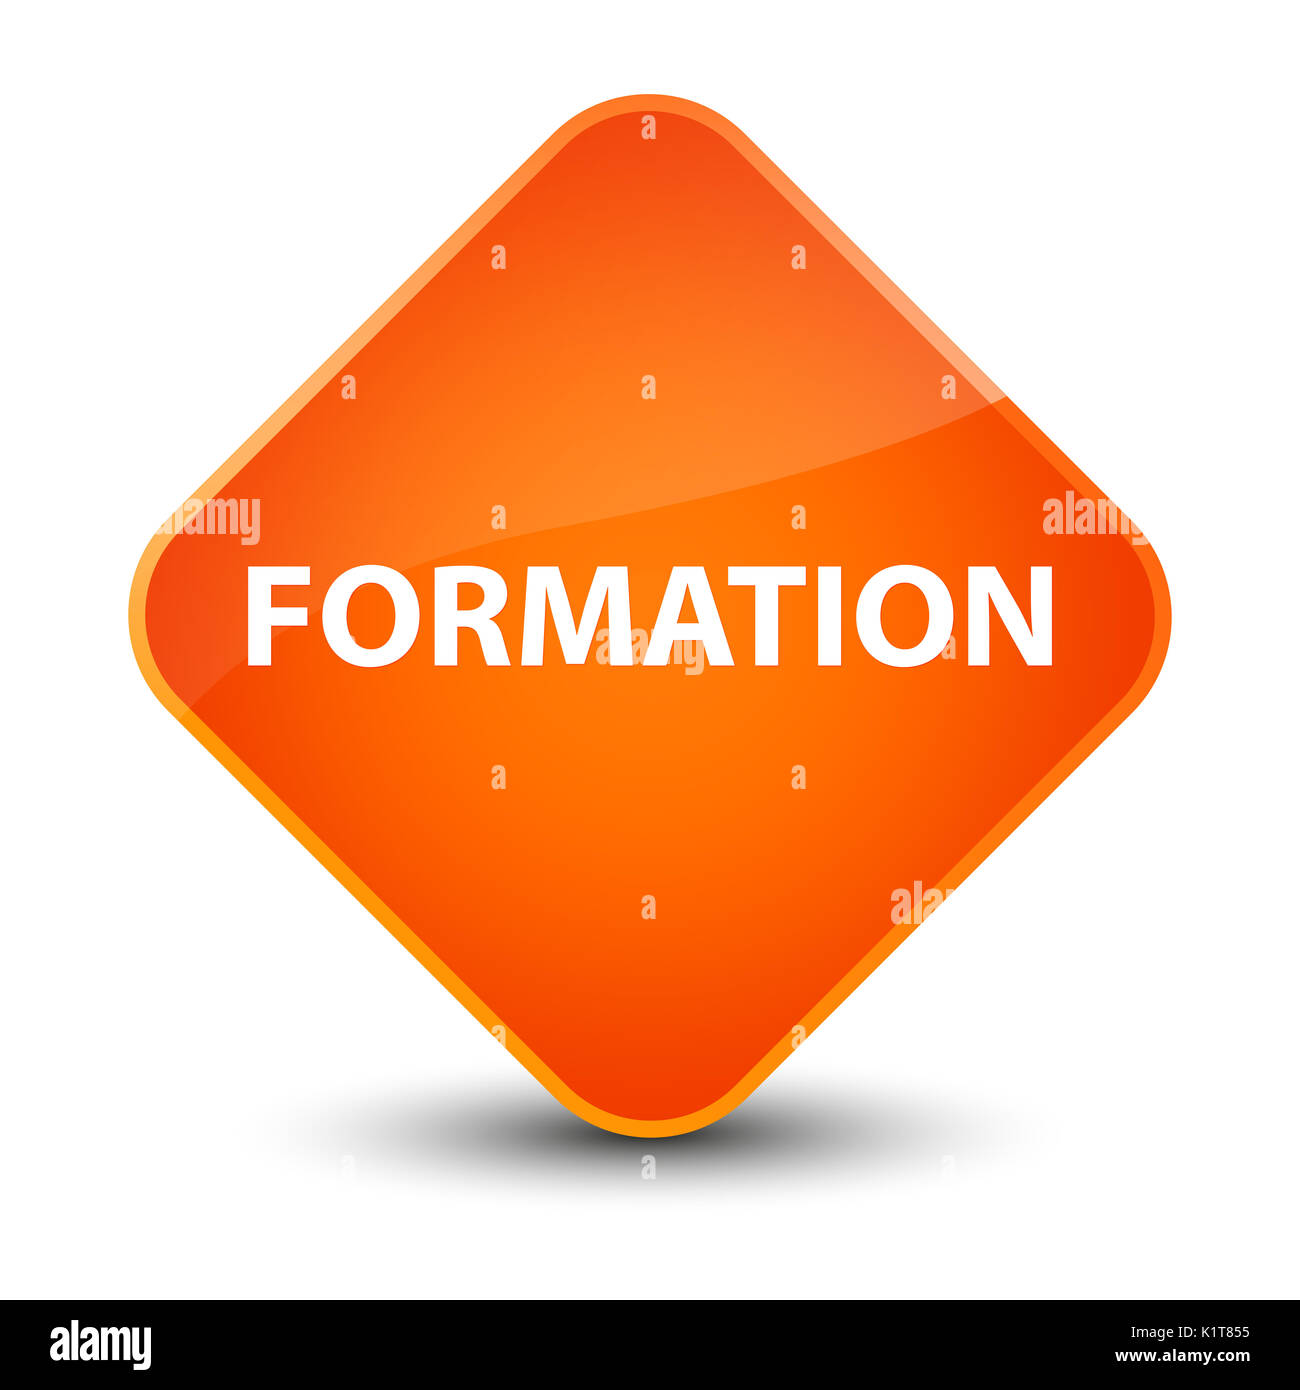 Formation isolé sur un élégant Bouton losange orange abstract illustration Banque D'Images